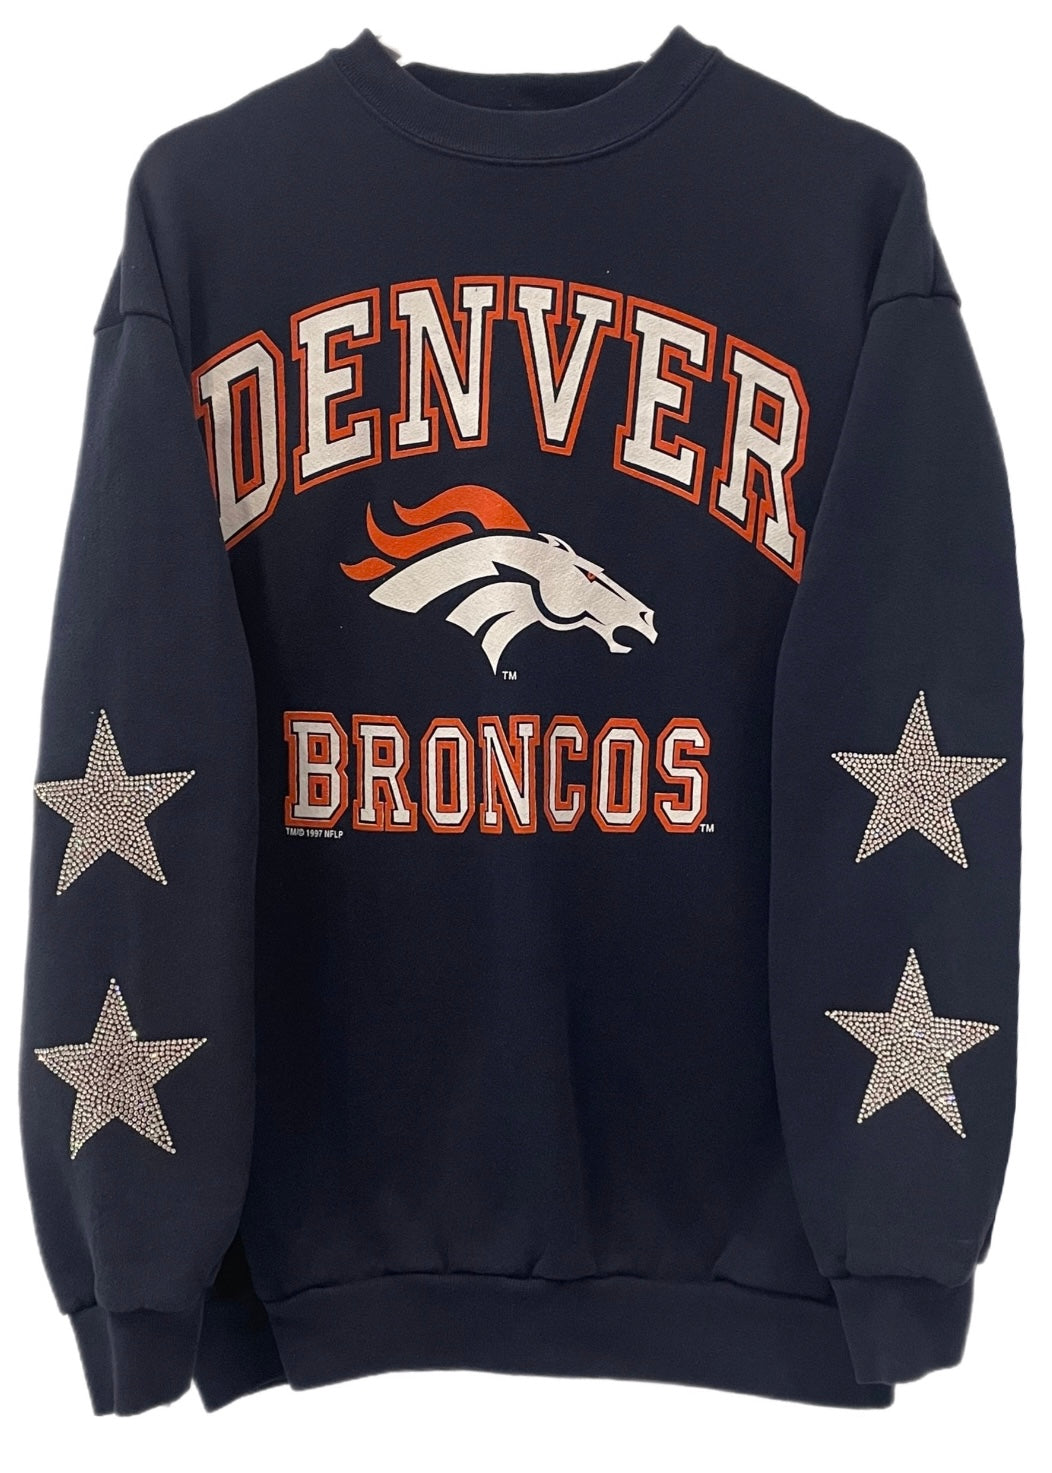 Denver Broncos, NFL One of a KIND Vintage Sweatshirt with Crystal Star Design